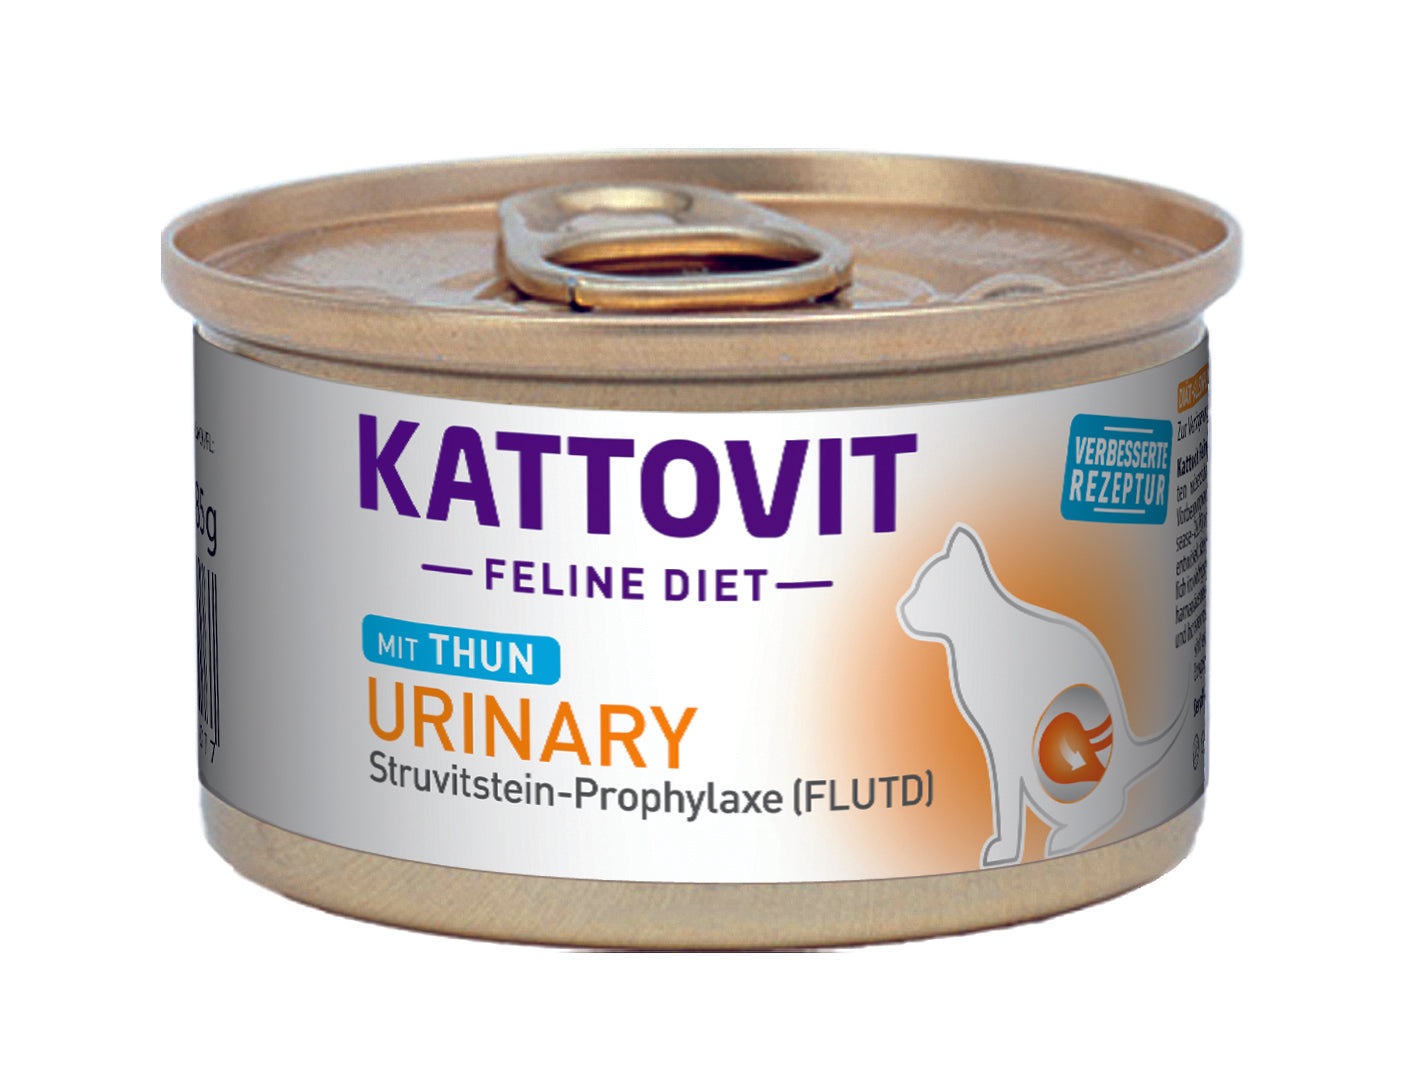 Artikel mit dem Namen Kattovit Feline Diet Urinary - Struvitstein-Prophylaxe FLUTD (C-Rezeptur) im Shop von zoo.de , dem Onlineshop für nachhaltiges Hundefutter und Katzenfutter.